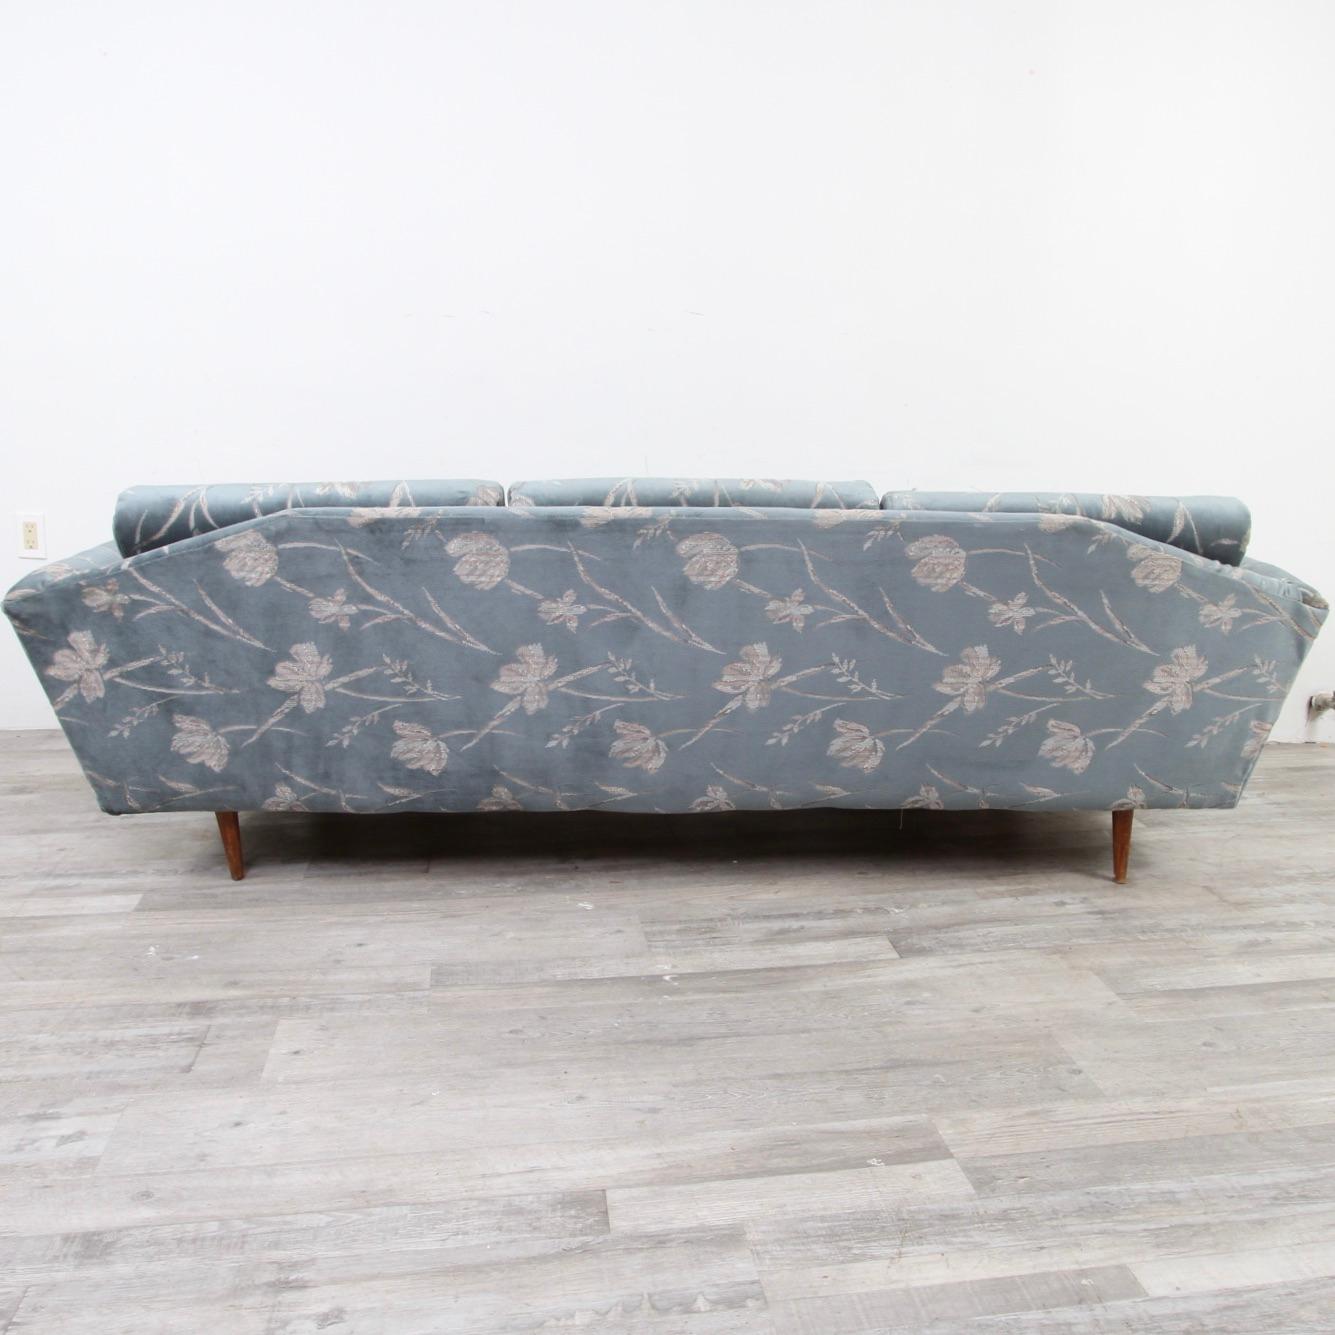 Walnut Adrian Pearsall Style Gondola Sofa by Bassett Prestige For Sale